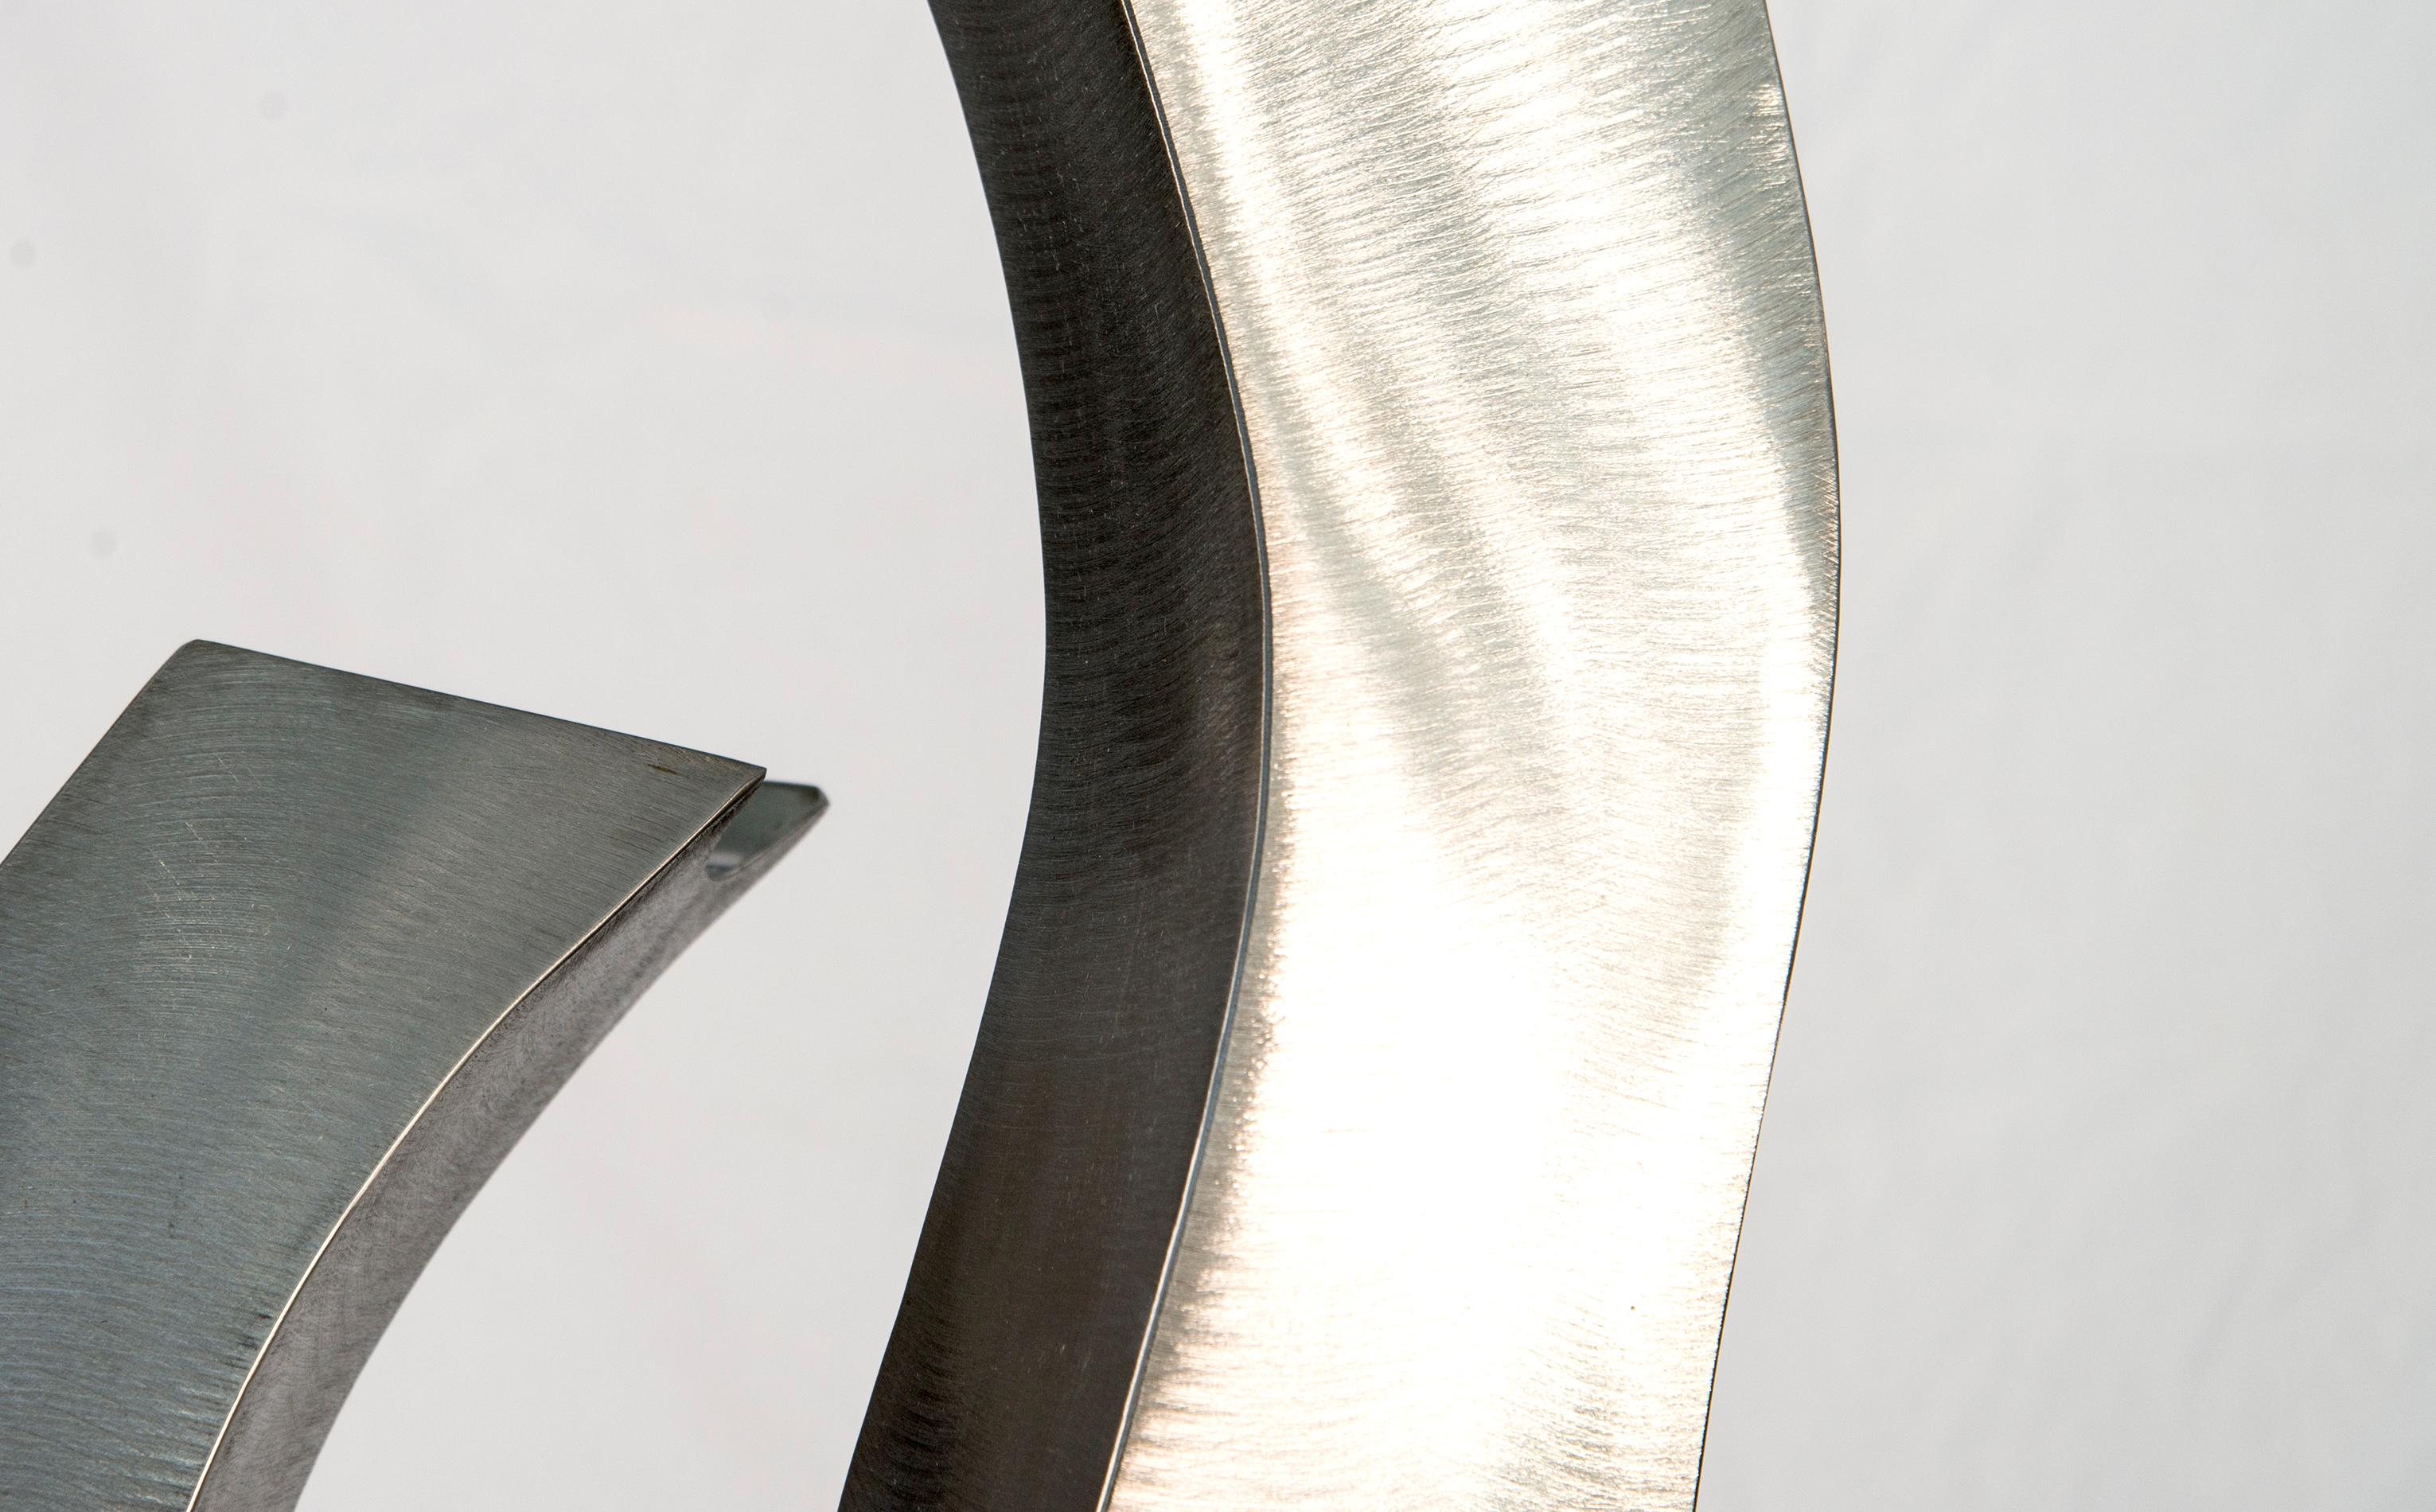 Les élégantes courbes en forme de S de cette sculpture ont été créées par l'artiste américain Kevin Robb. Trois pièces d'acier inoxydable polies et brillantes, qui se croisent, reflètent à la fois l'ombre et la lumière. Sculpteur depuis plus de 35